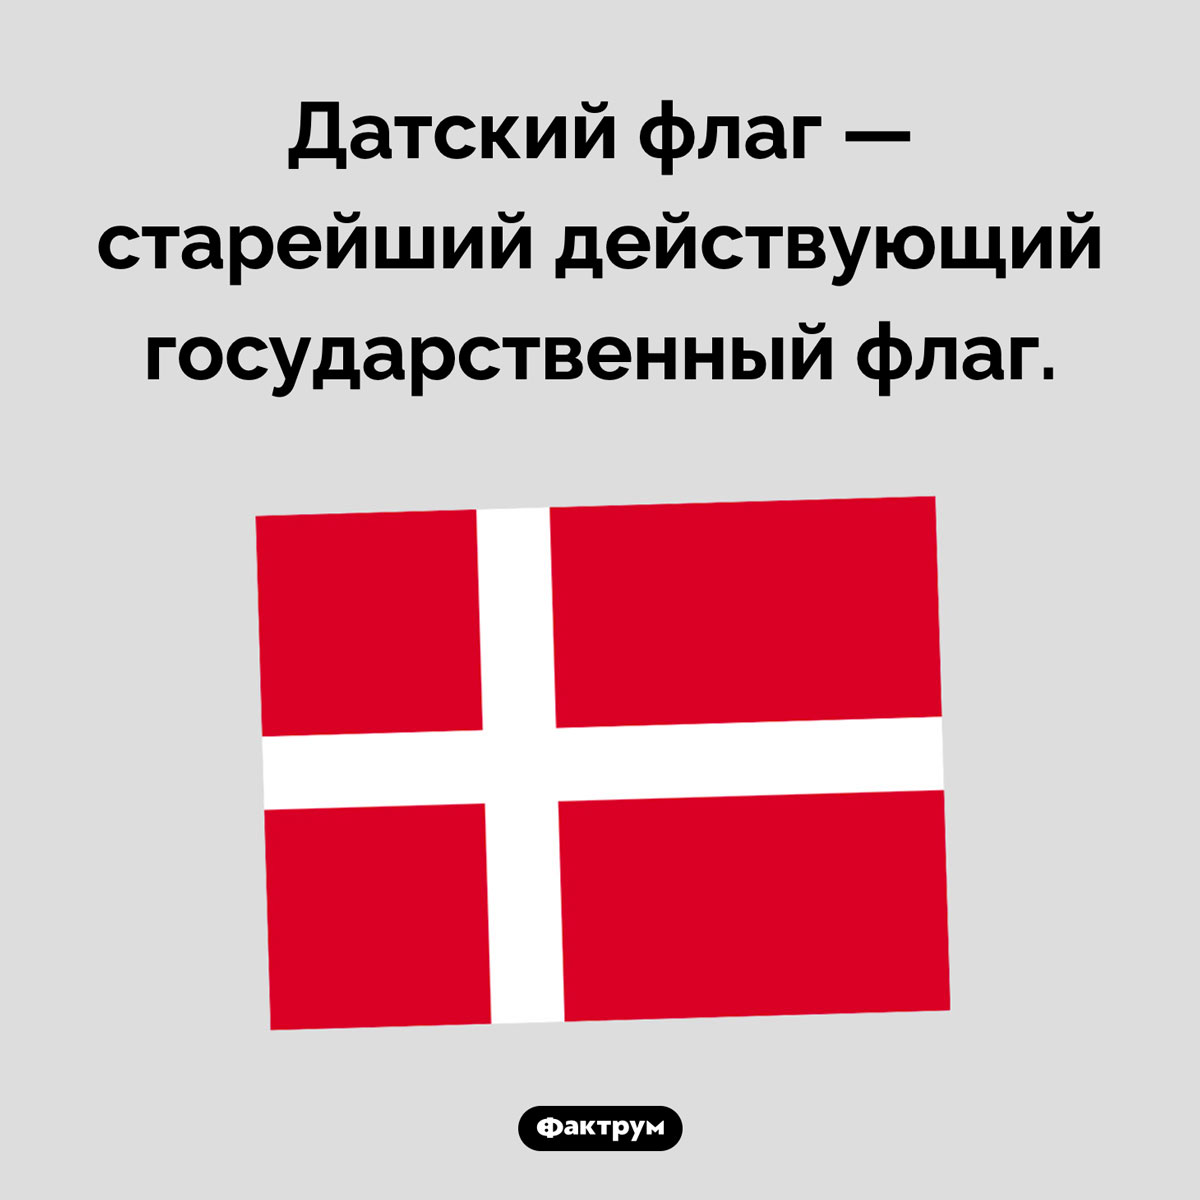 Датский флаг — старейший в мире. Датский флаг — старейший действующий государственный флаг.